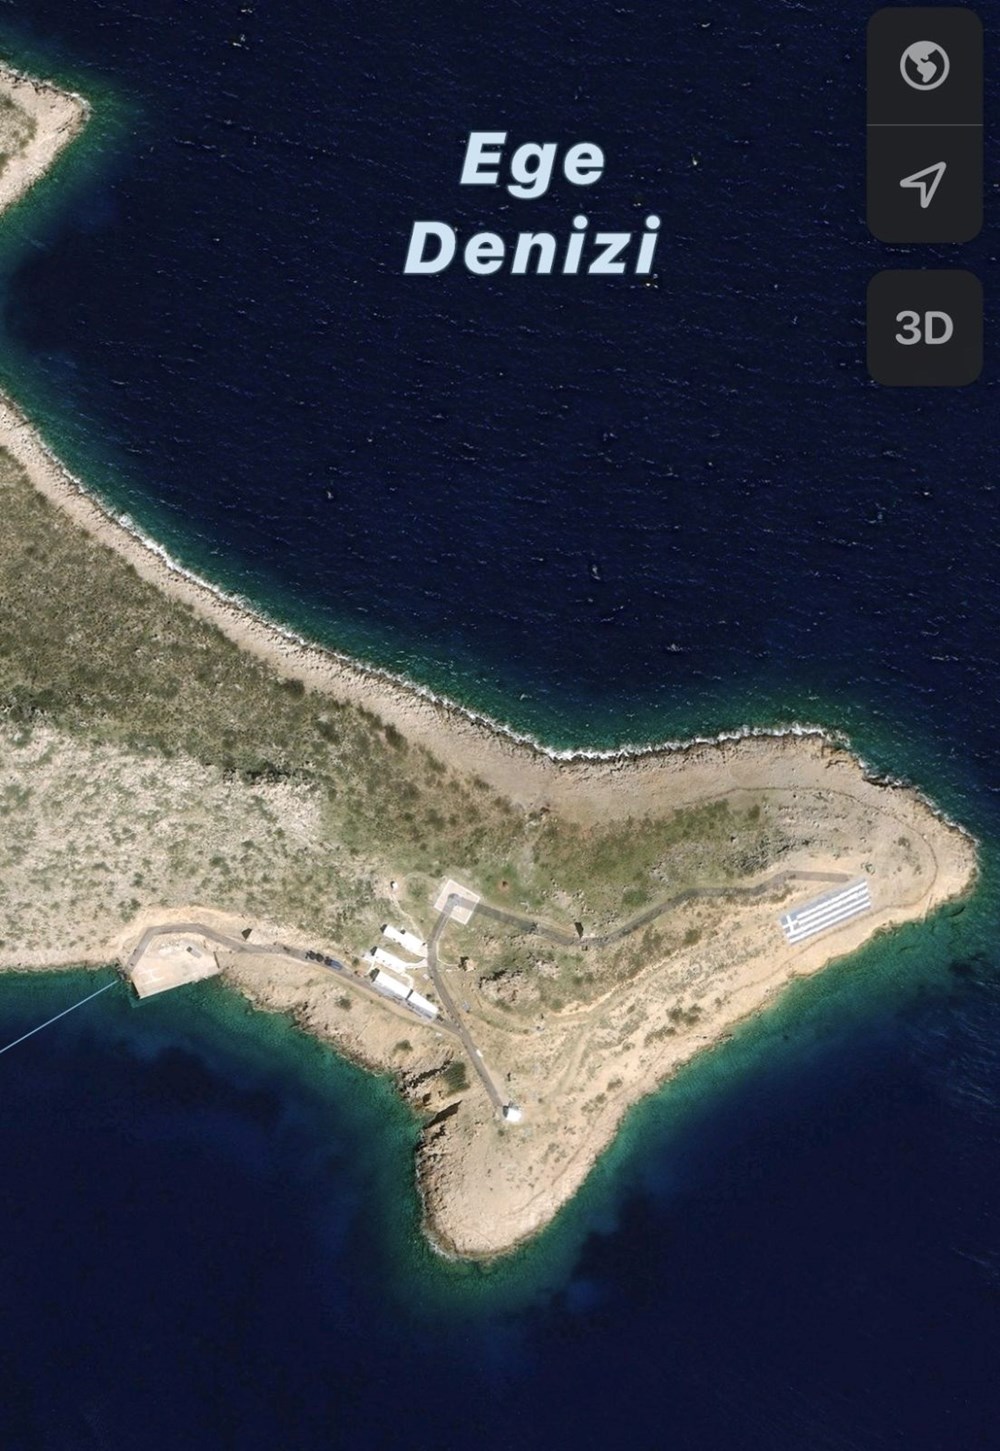 Keçi Adası'ndaki Yunan askerleri ve adaya yerleştirilen ağır silahlar görüntülendi - 2